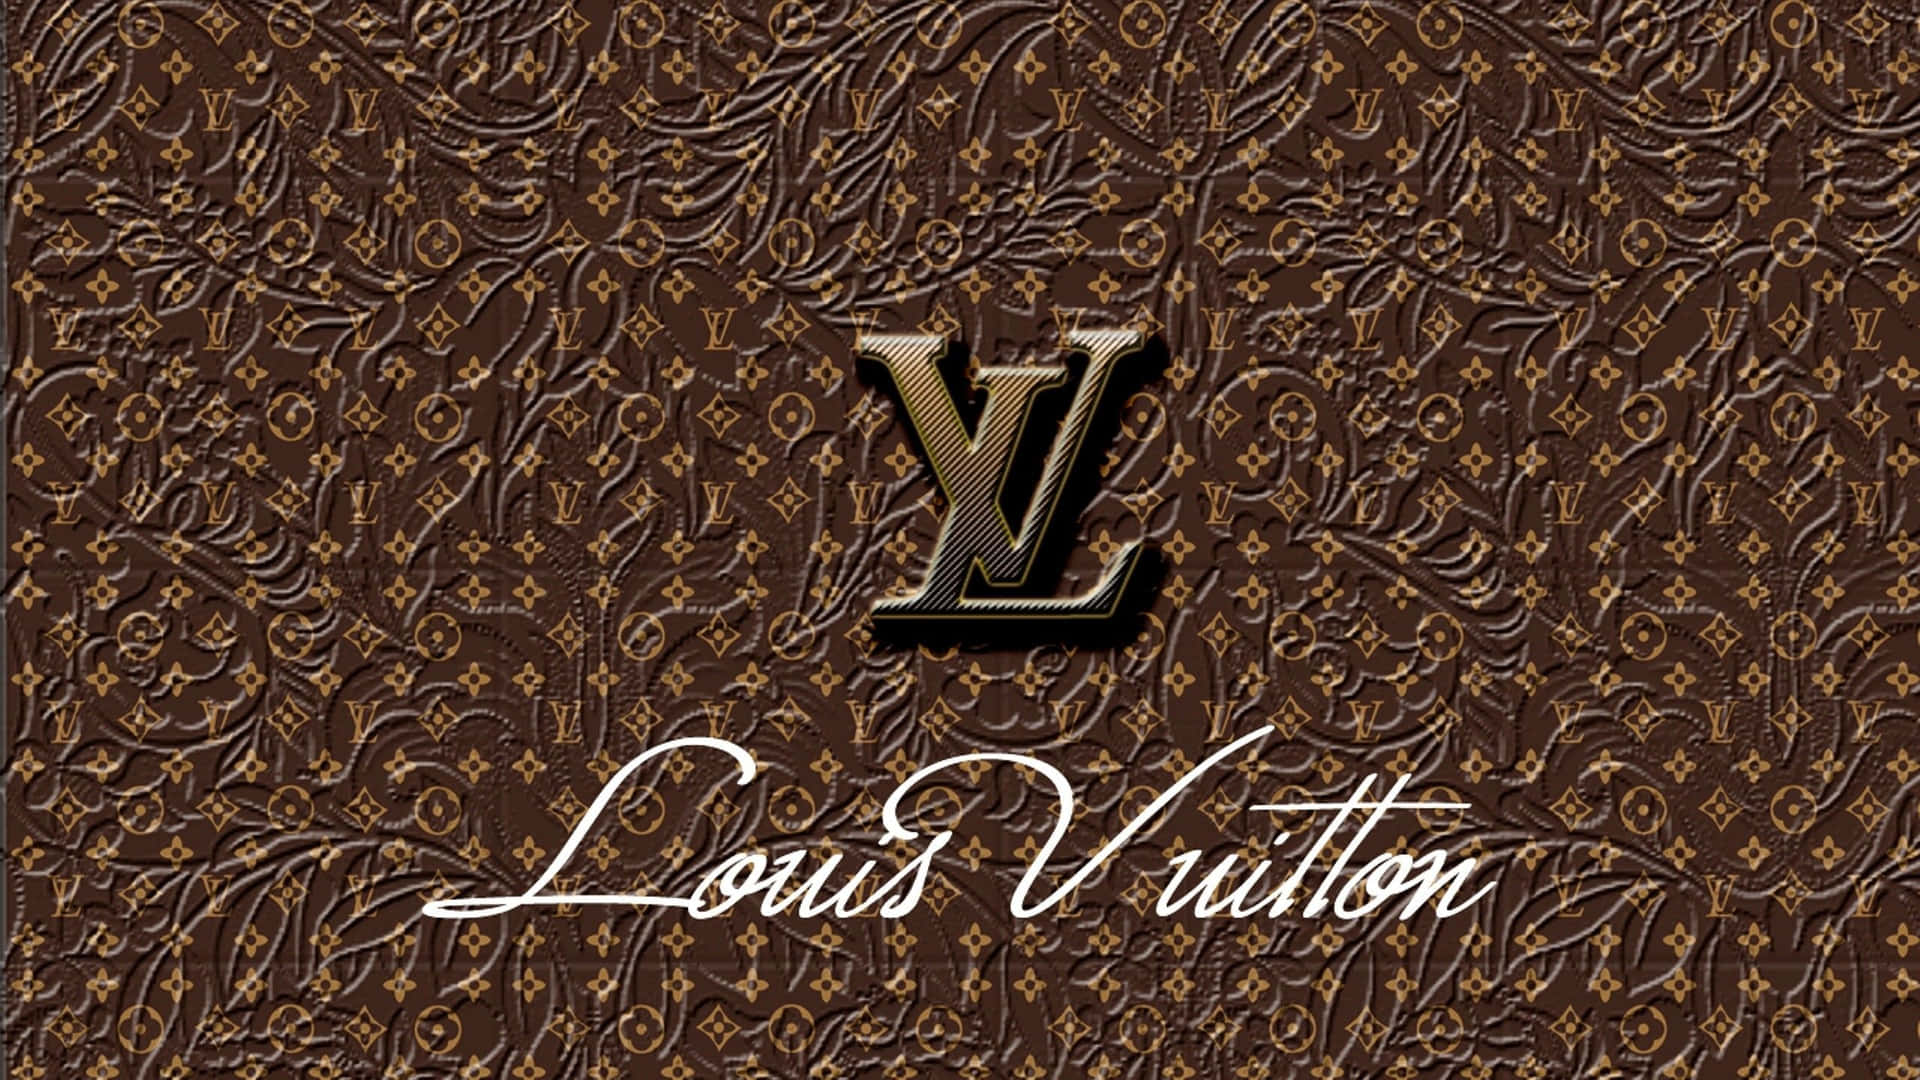 Tải về miễn phí hình nền Louis Vuitton Logo với chất lượng cao đến ngay từ bây giờ. Với mẫu logo đặc trưng của Louis Vuitton, chiếc điện thoại của bạn sẽ trở nên thật sự ấn tượng và độc đáo.